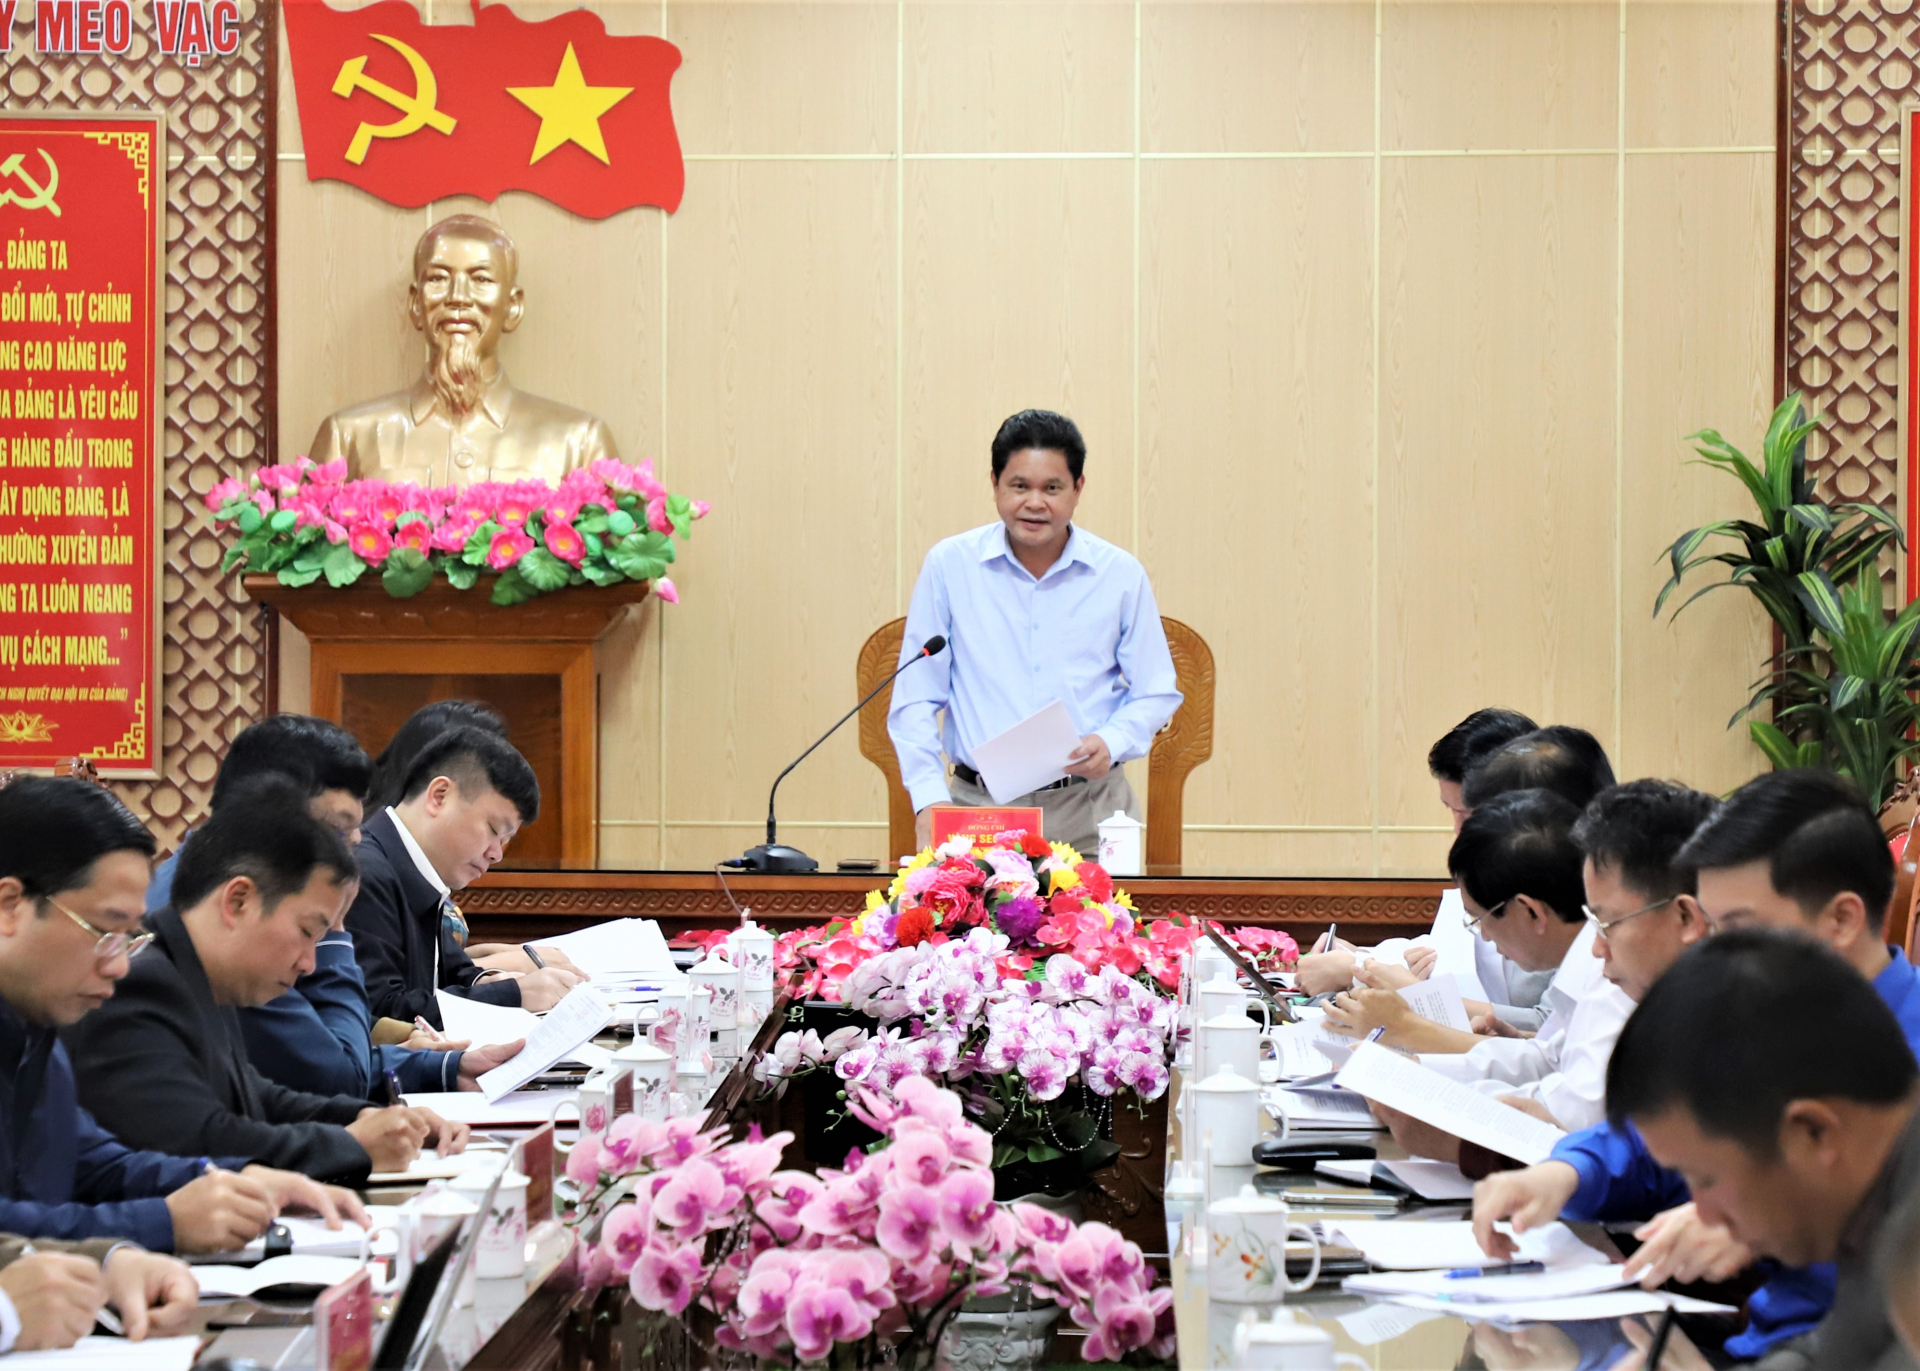 Đồng chí Vàng Seo Cón, Chủ tịch Ủy ban MTTQ tỉnh kết luận tại buổi làm việc.